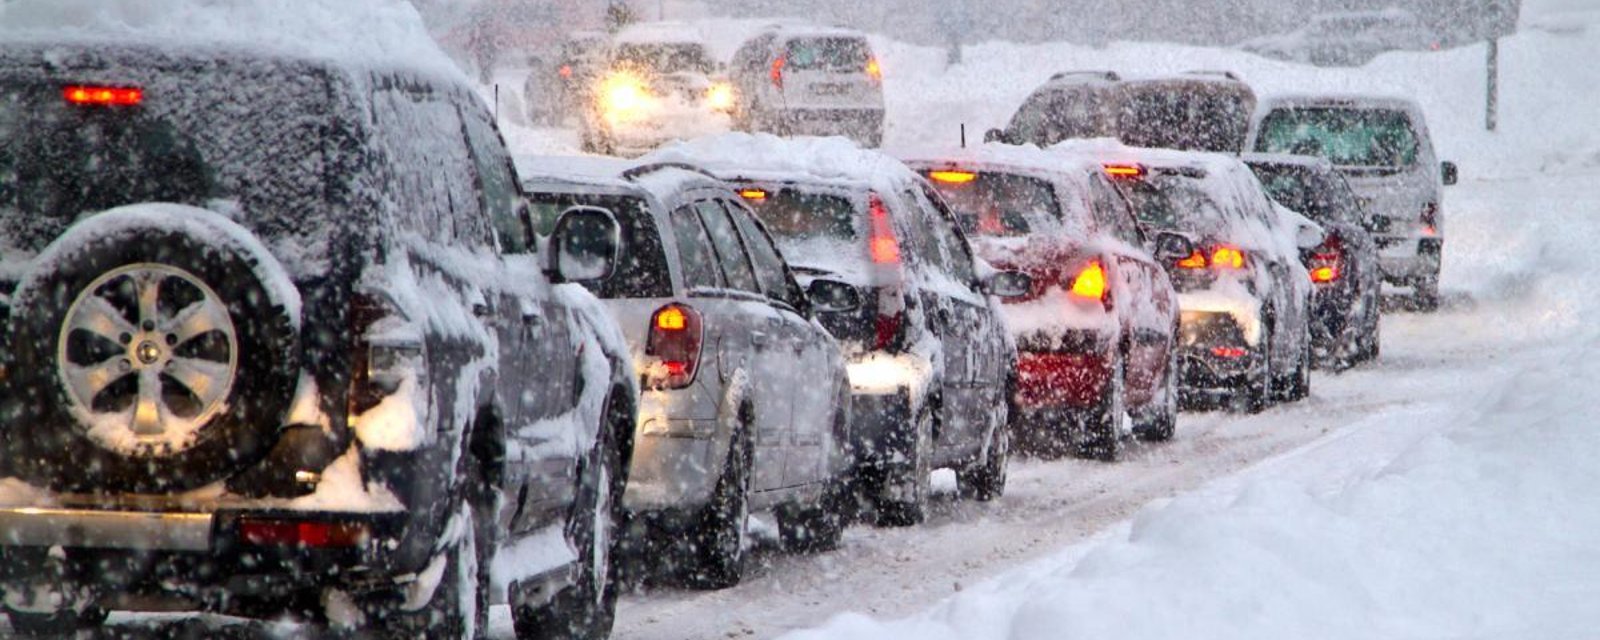 Les Québécois devront être extrêmement prudents sur les routes ce soir et demain